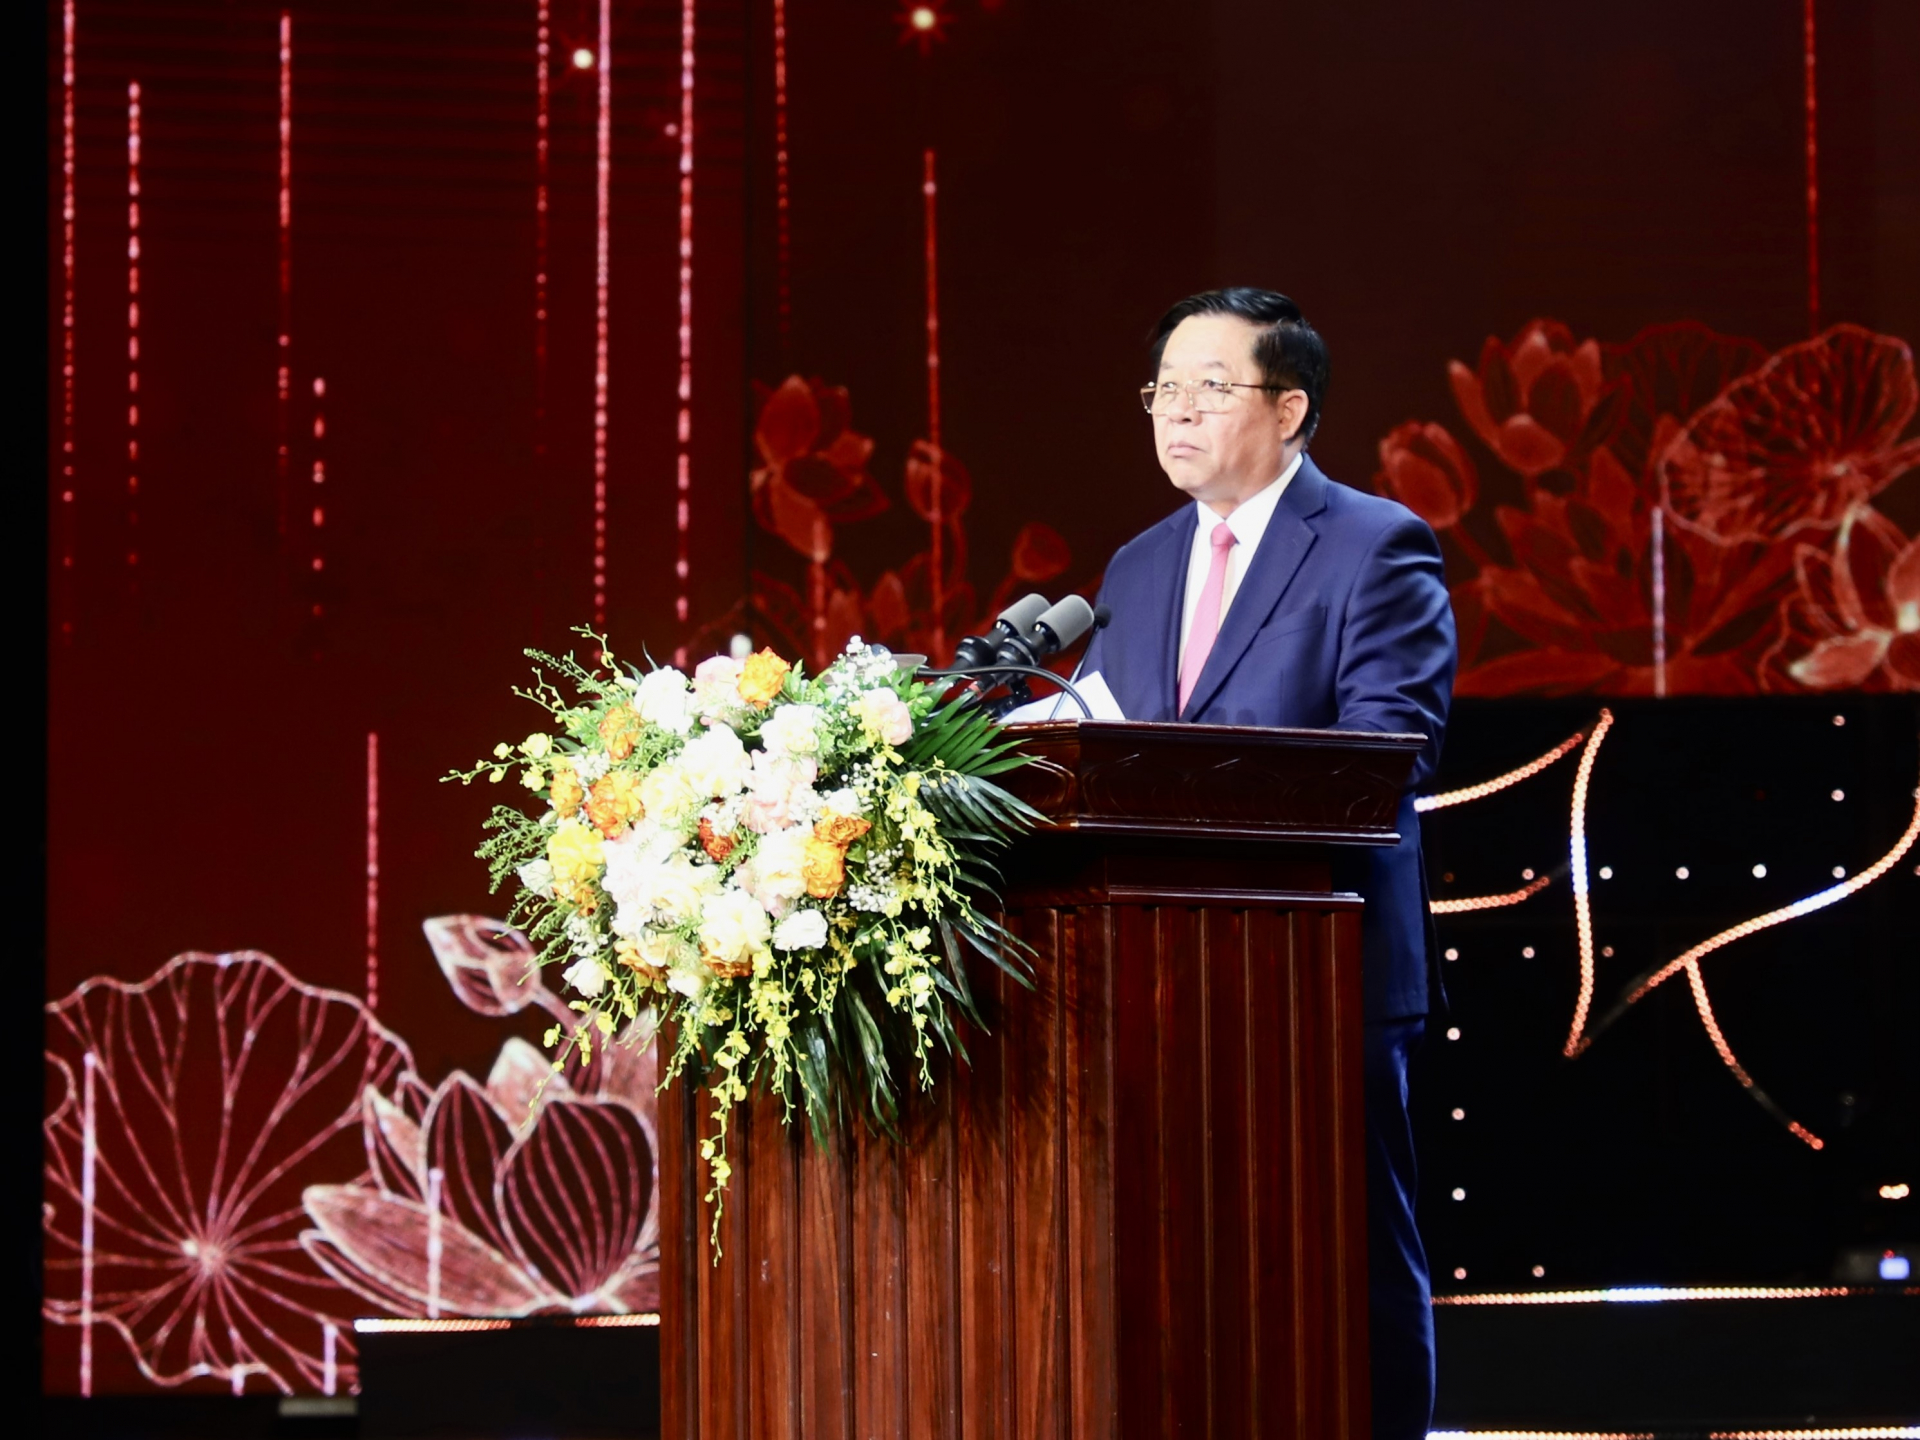 Đồng chí Nguyễn Trọng Nghĩa, Trưởng ban Tuyên giáo T.Ư phát biểu tại buổi lễ